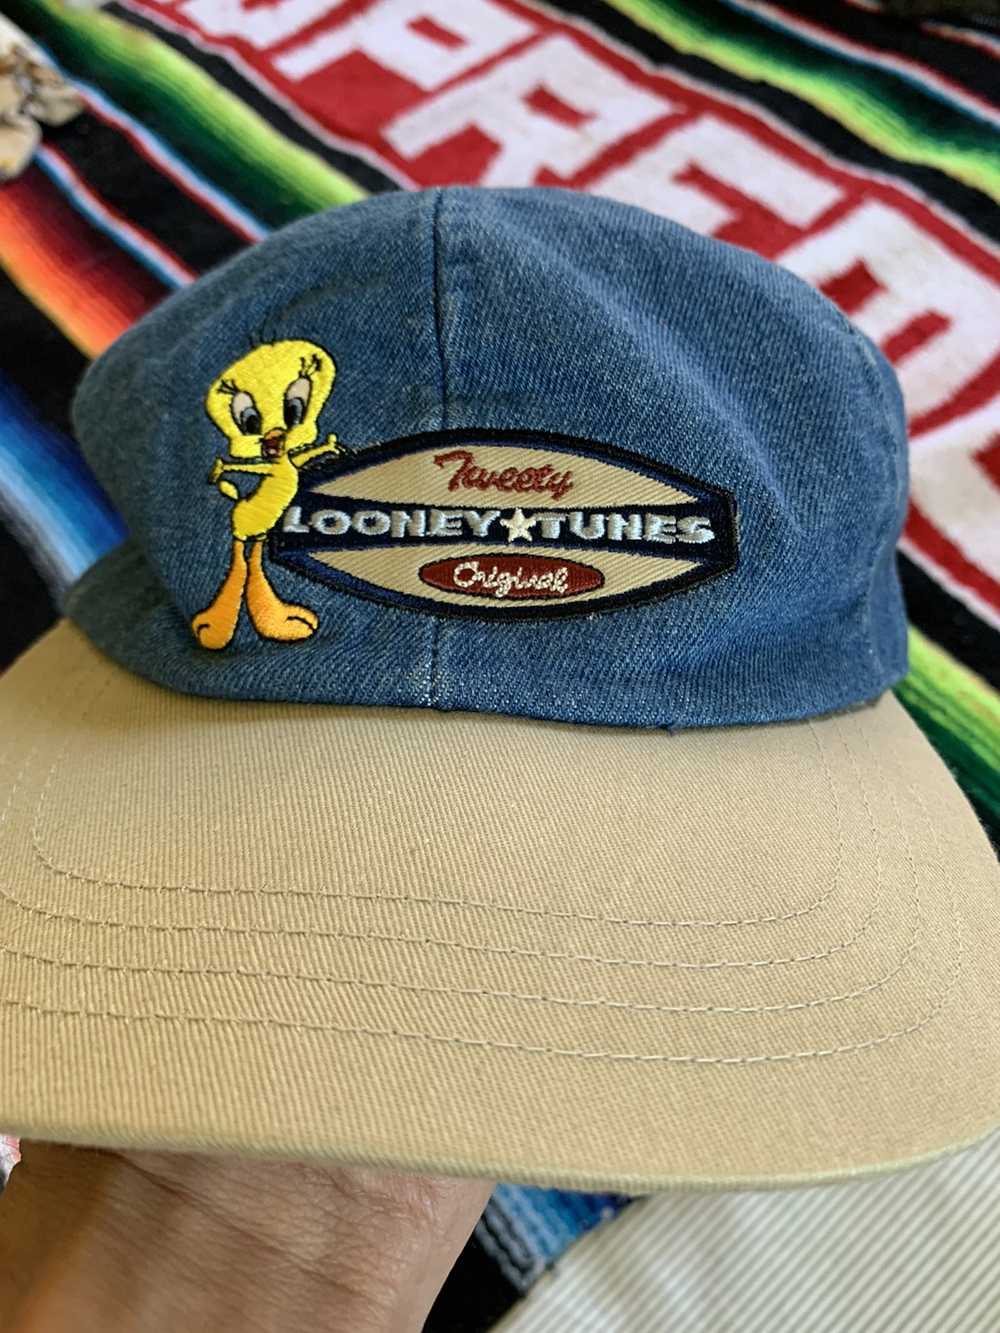 Vintage Vintage tweety looney tunes hat - image 1